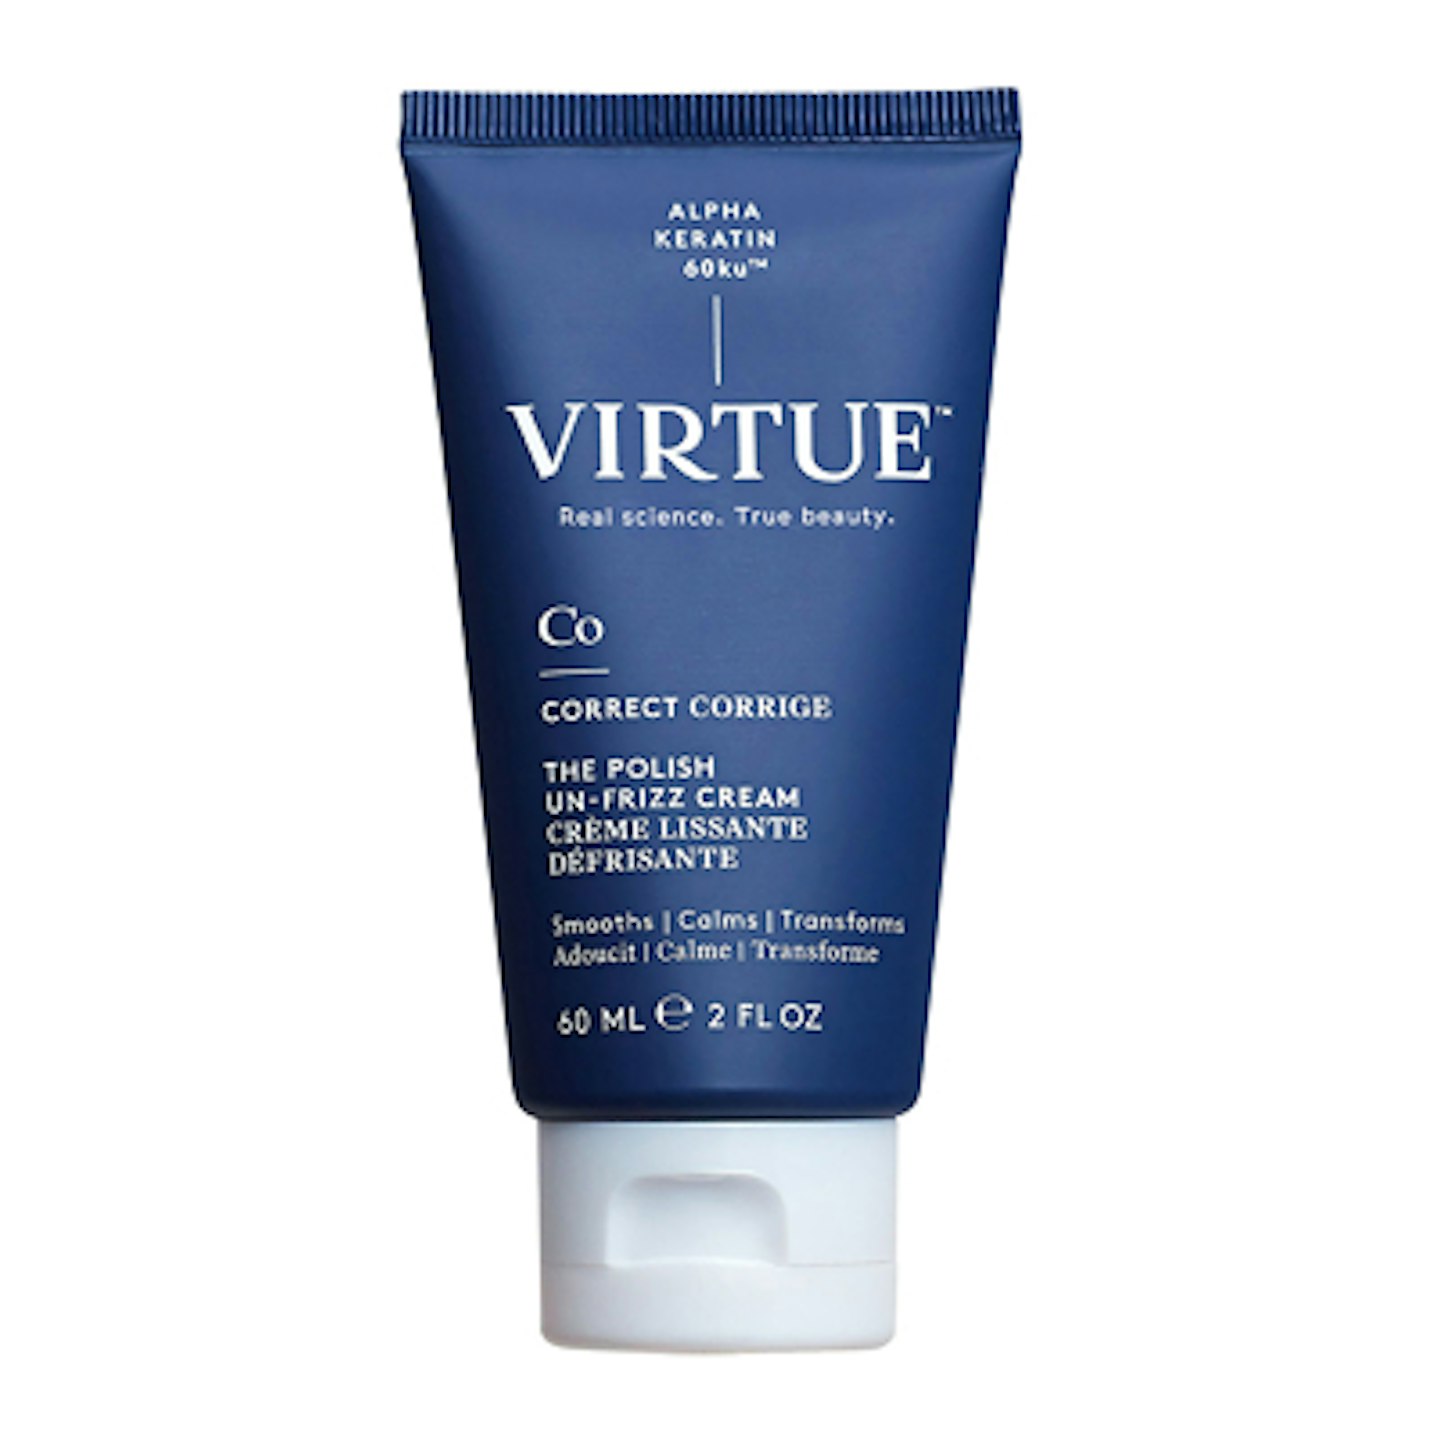 Virtue Labs Polish Un-Frizz Cream